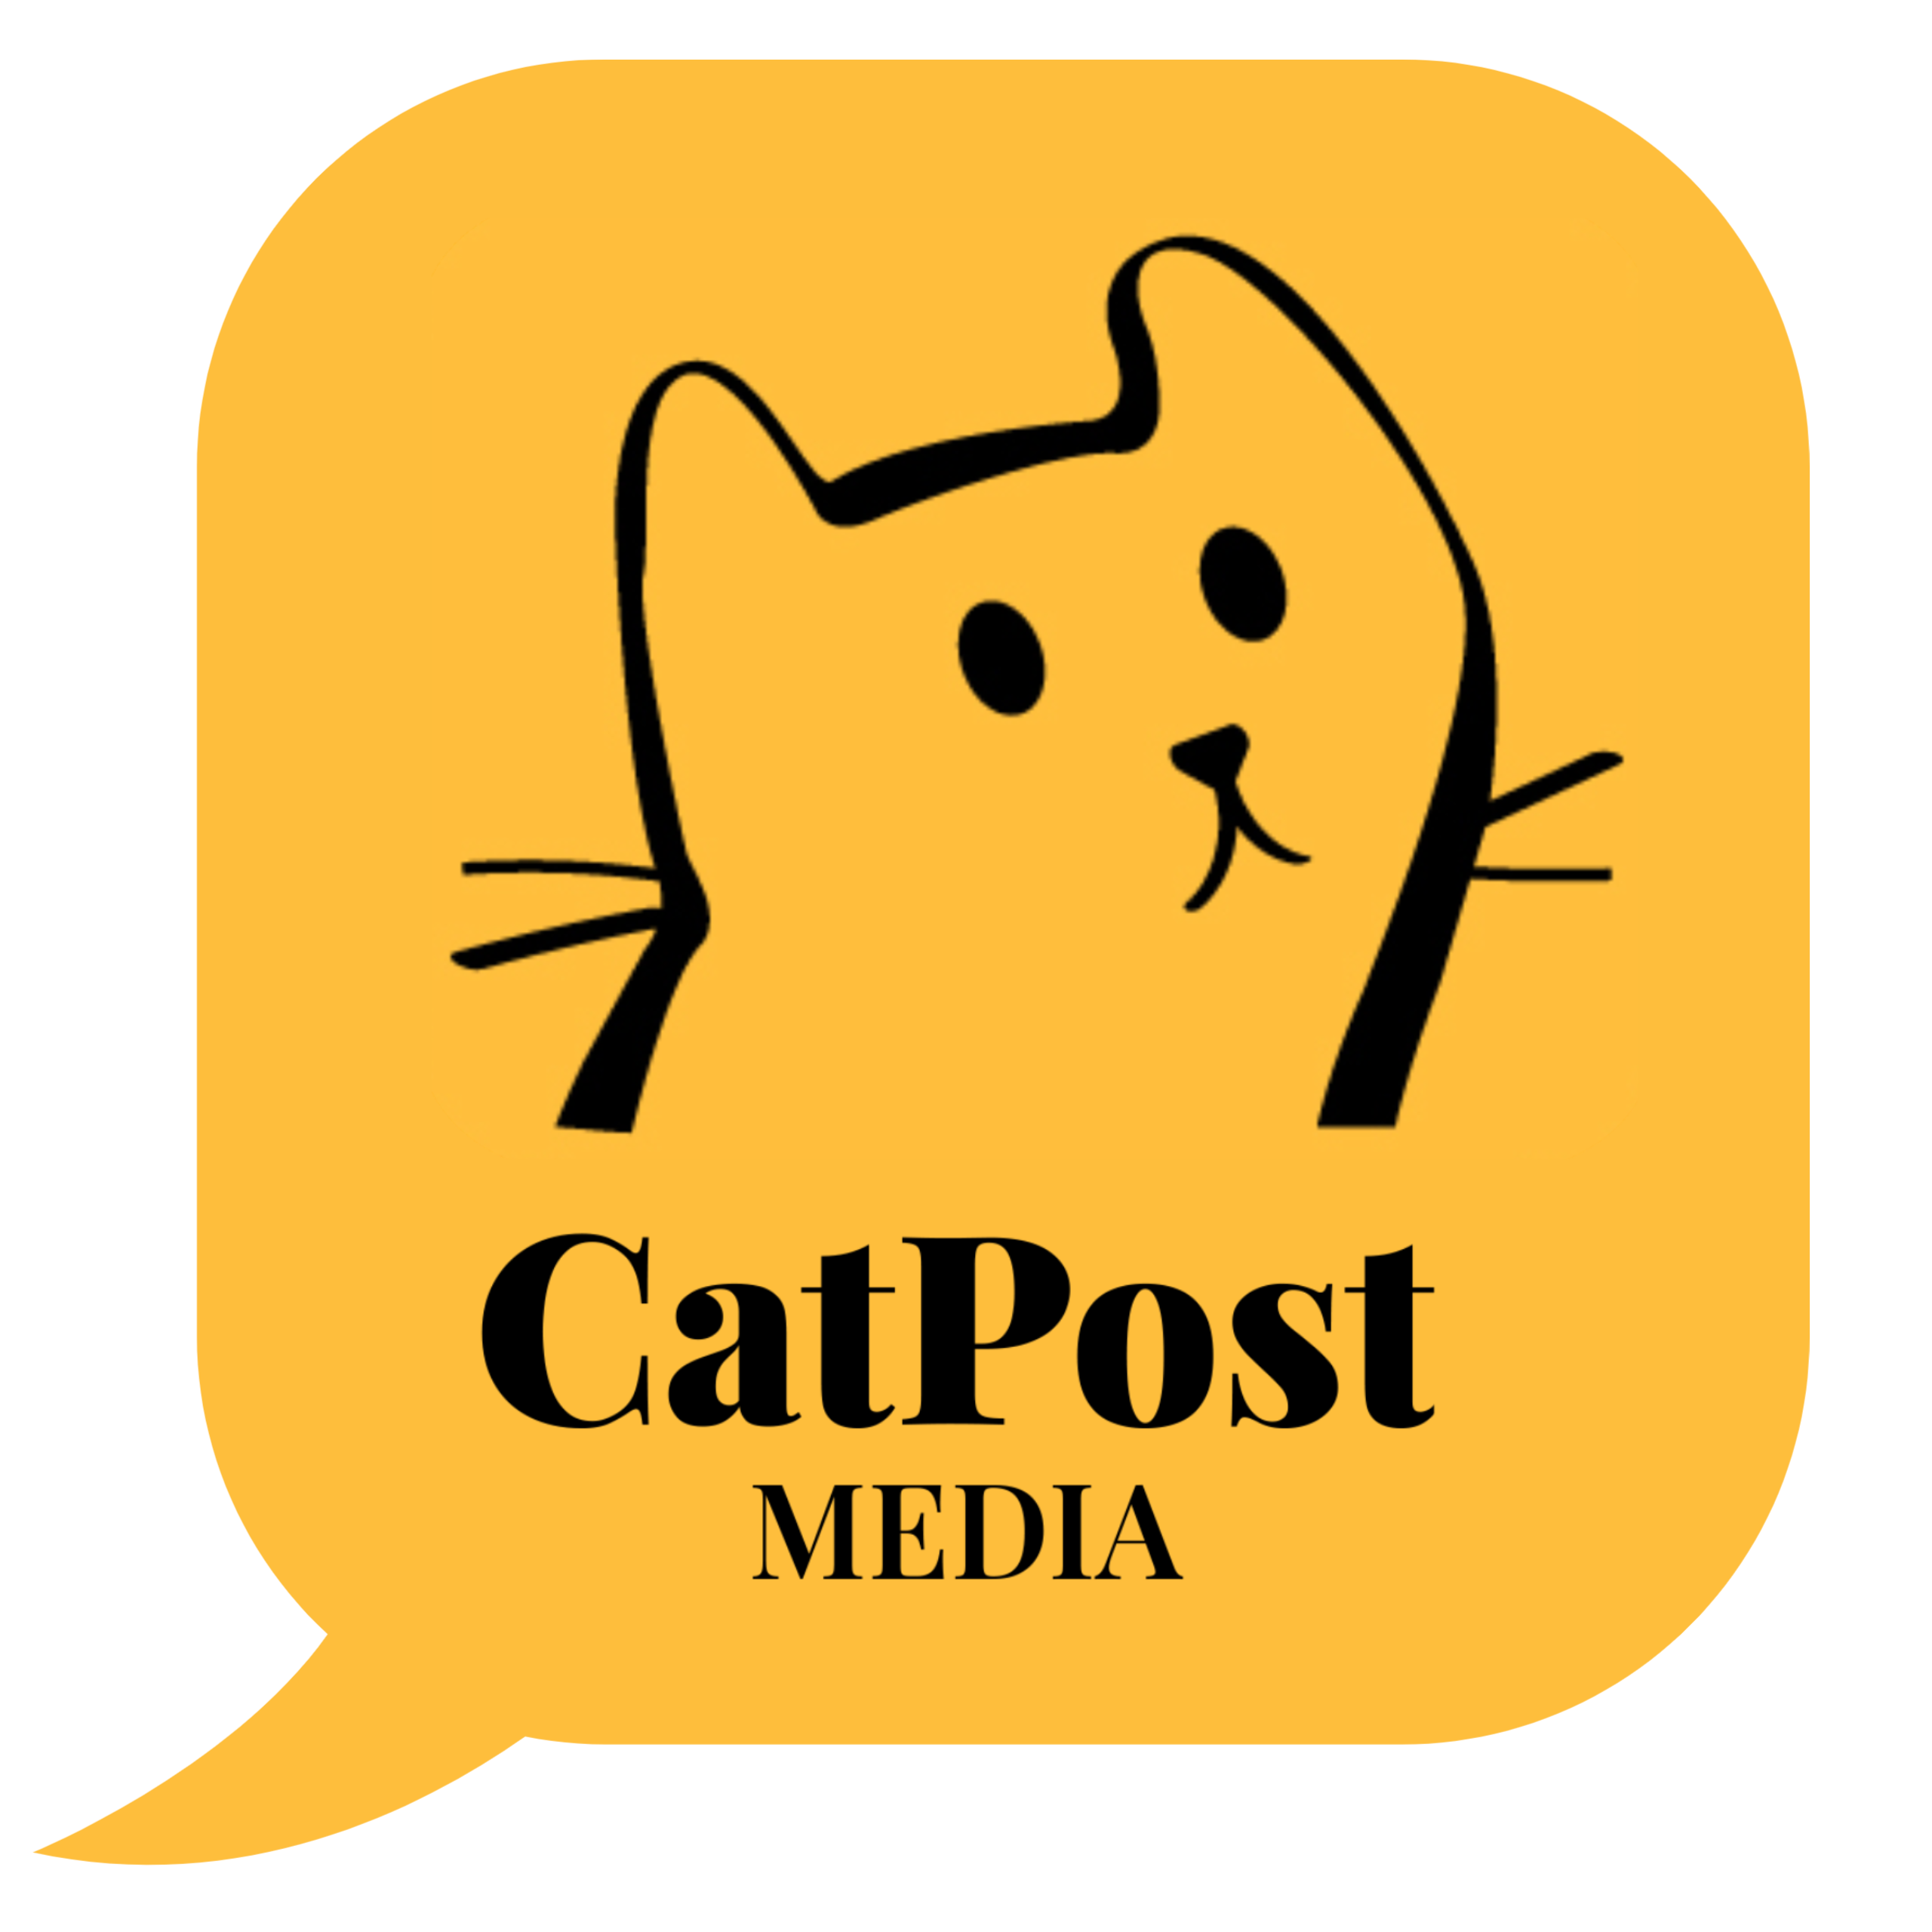 CatPost